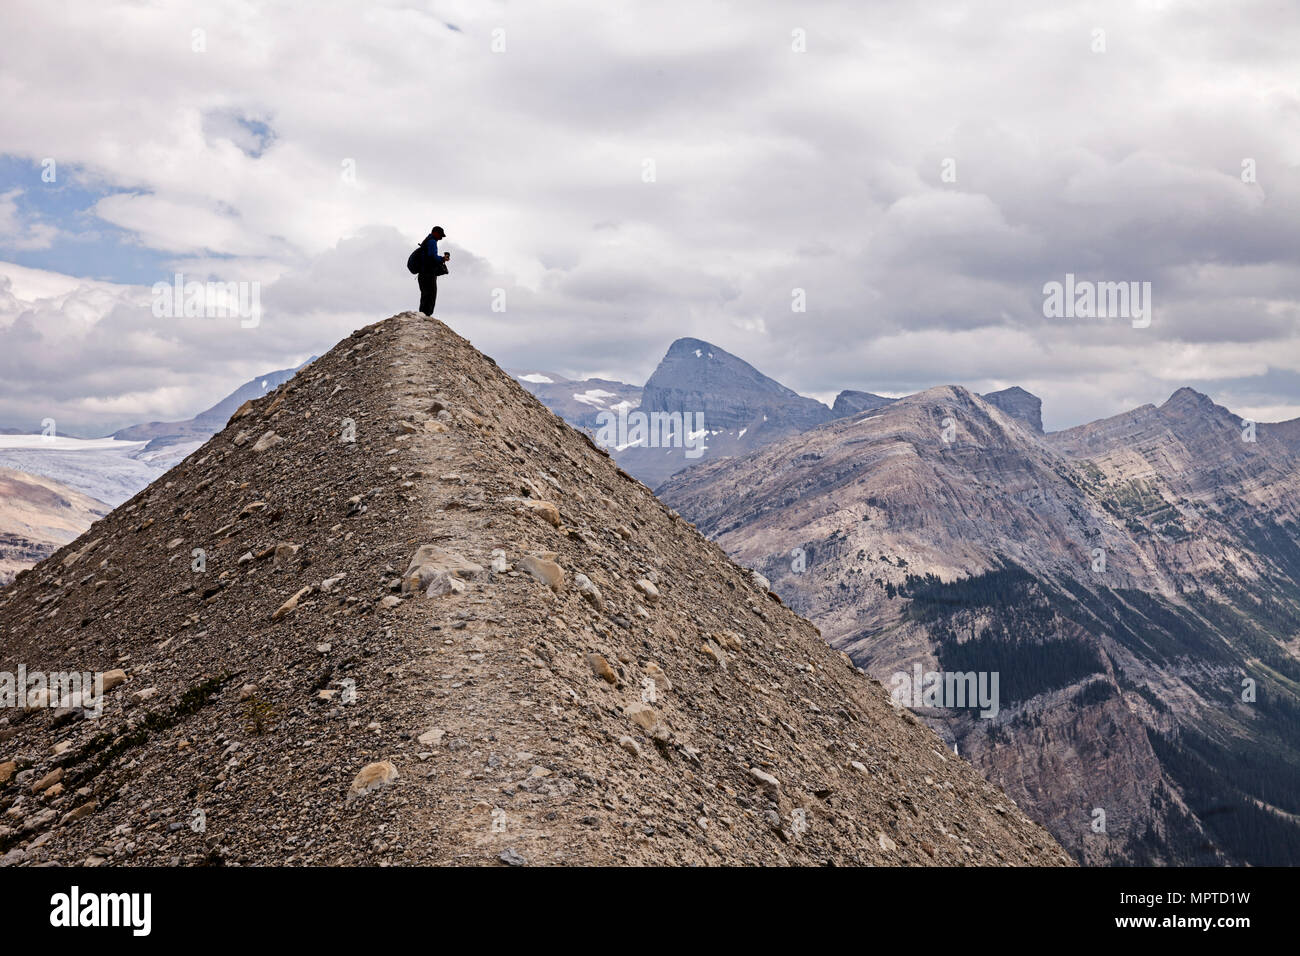 Une silhouette vue d'un randonneur anonyme se dresse au sommet d'une petite colline en forme de pyramide en face des Rocheuses canadiennes dans le parc national Yoho. Banque D'Images